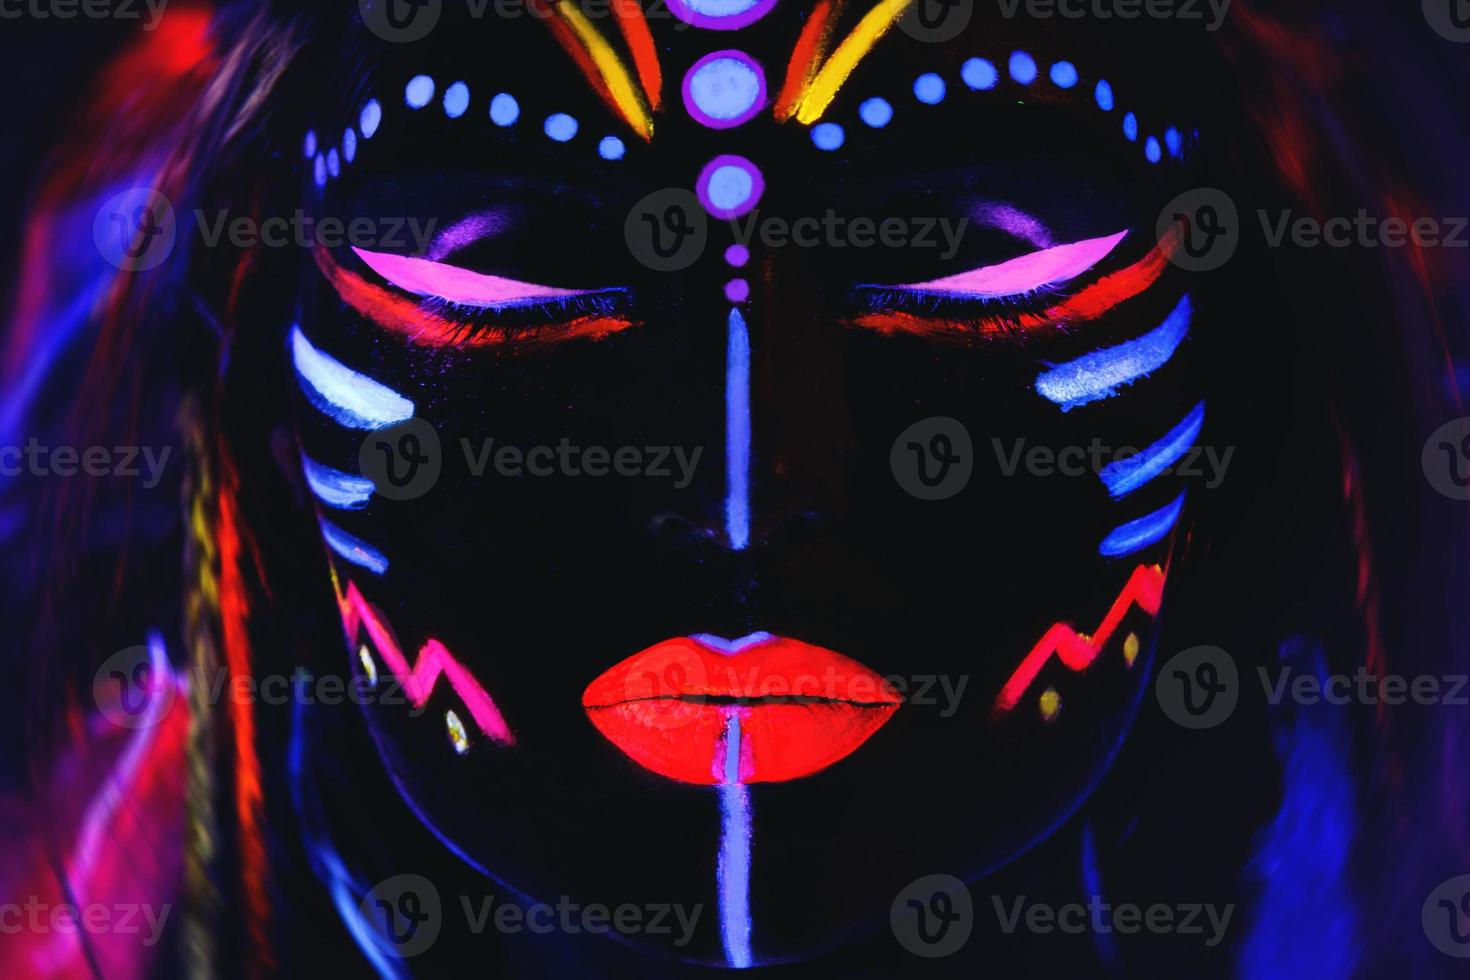 modelo em imagem de nativo americano com maquiagem neon, feita de tinta fluorescente em luz ultravioleta. foto